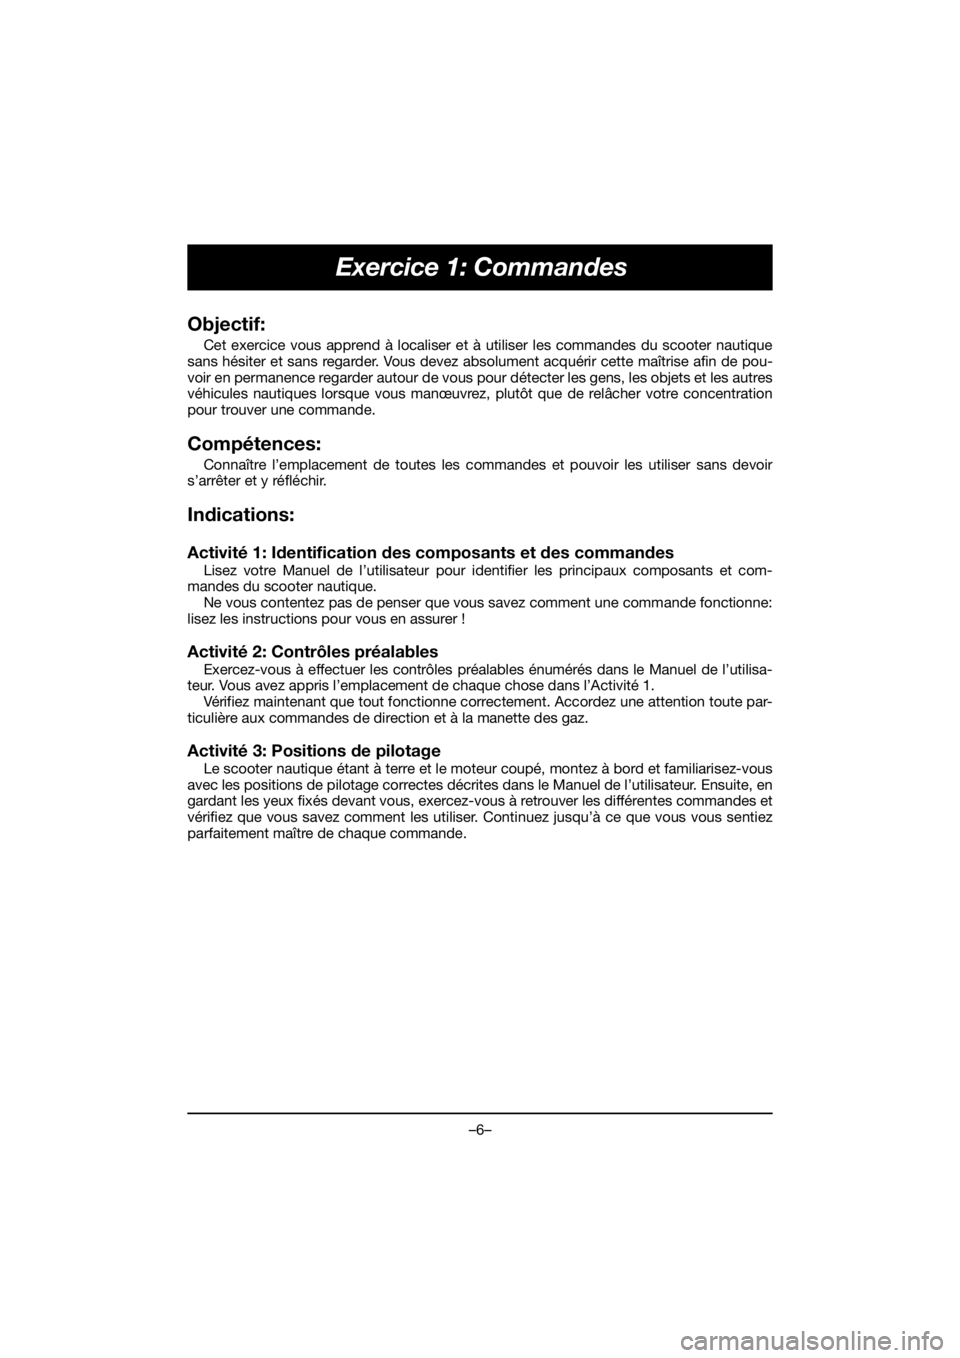 YAMAHA EX 2019  Manual de utilização (in Portuguese) –6–
Exercice 1: Commandes
Objectif:
Cet exercice vous apprend à localiser et à utiliser les commandes du scooter nautique
sans hésiter et sans regarder. Vous devez absolument acquérir cette ma